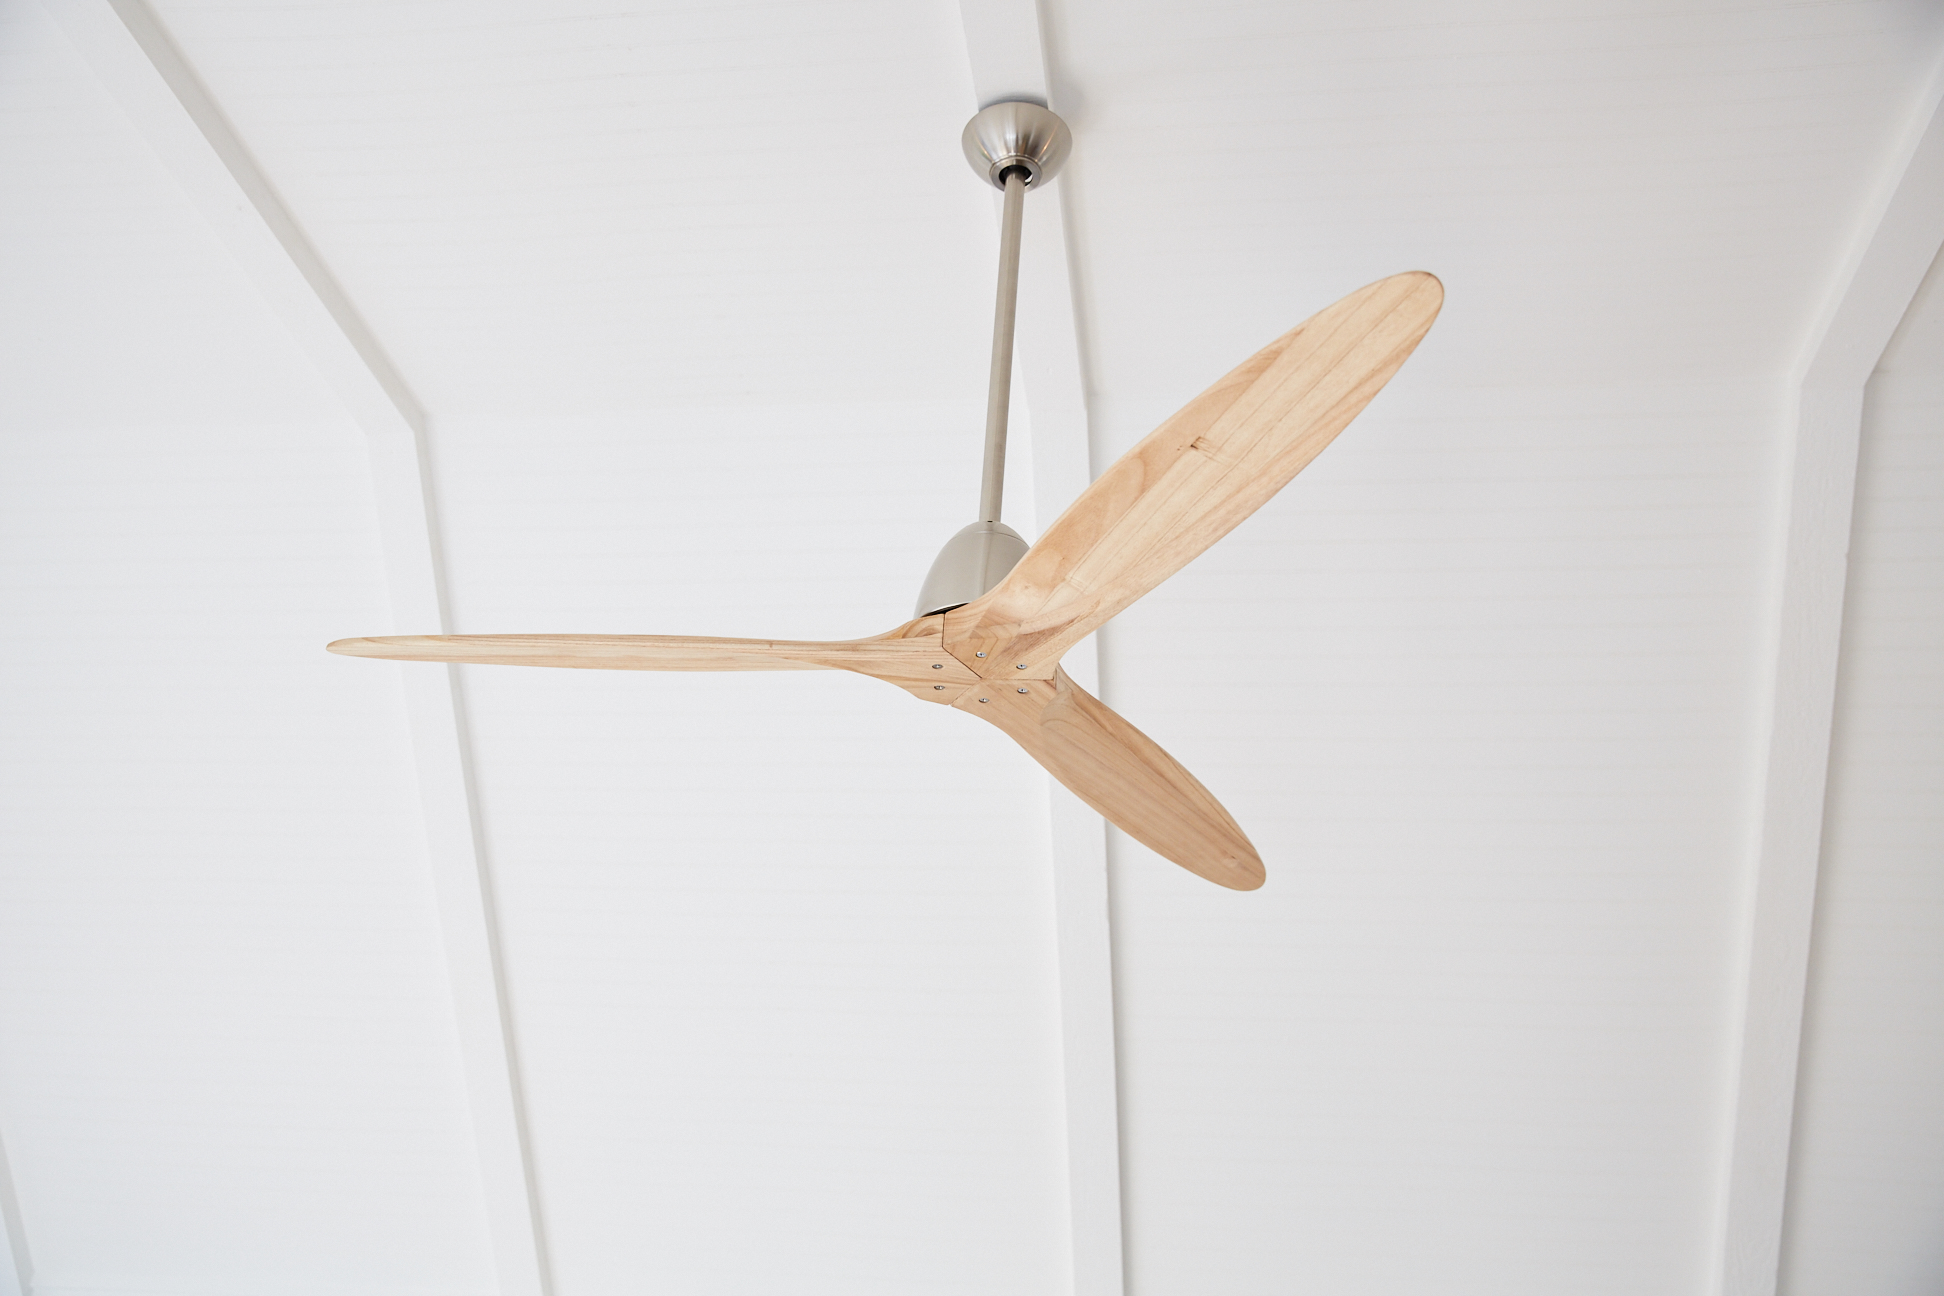 Ceiling Fan in Bedroom